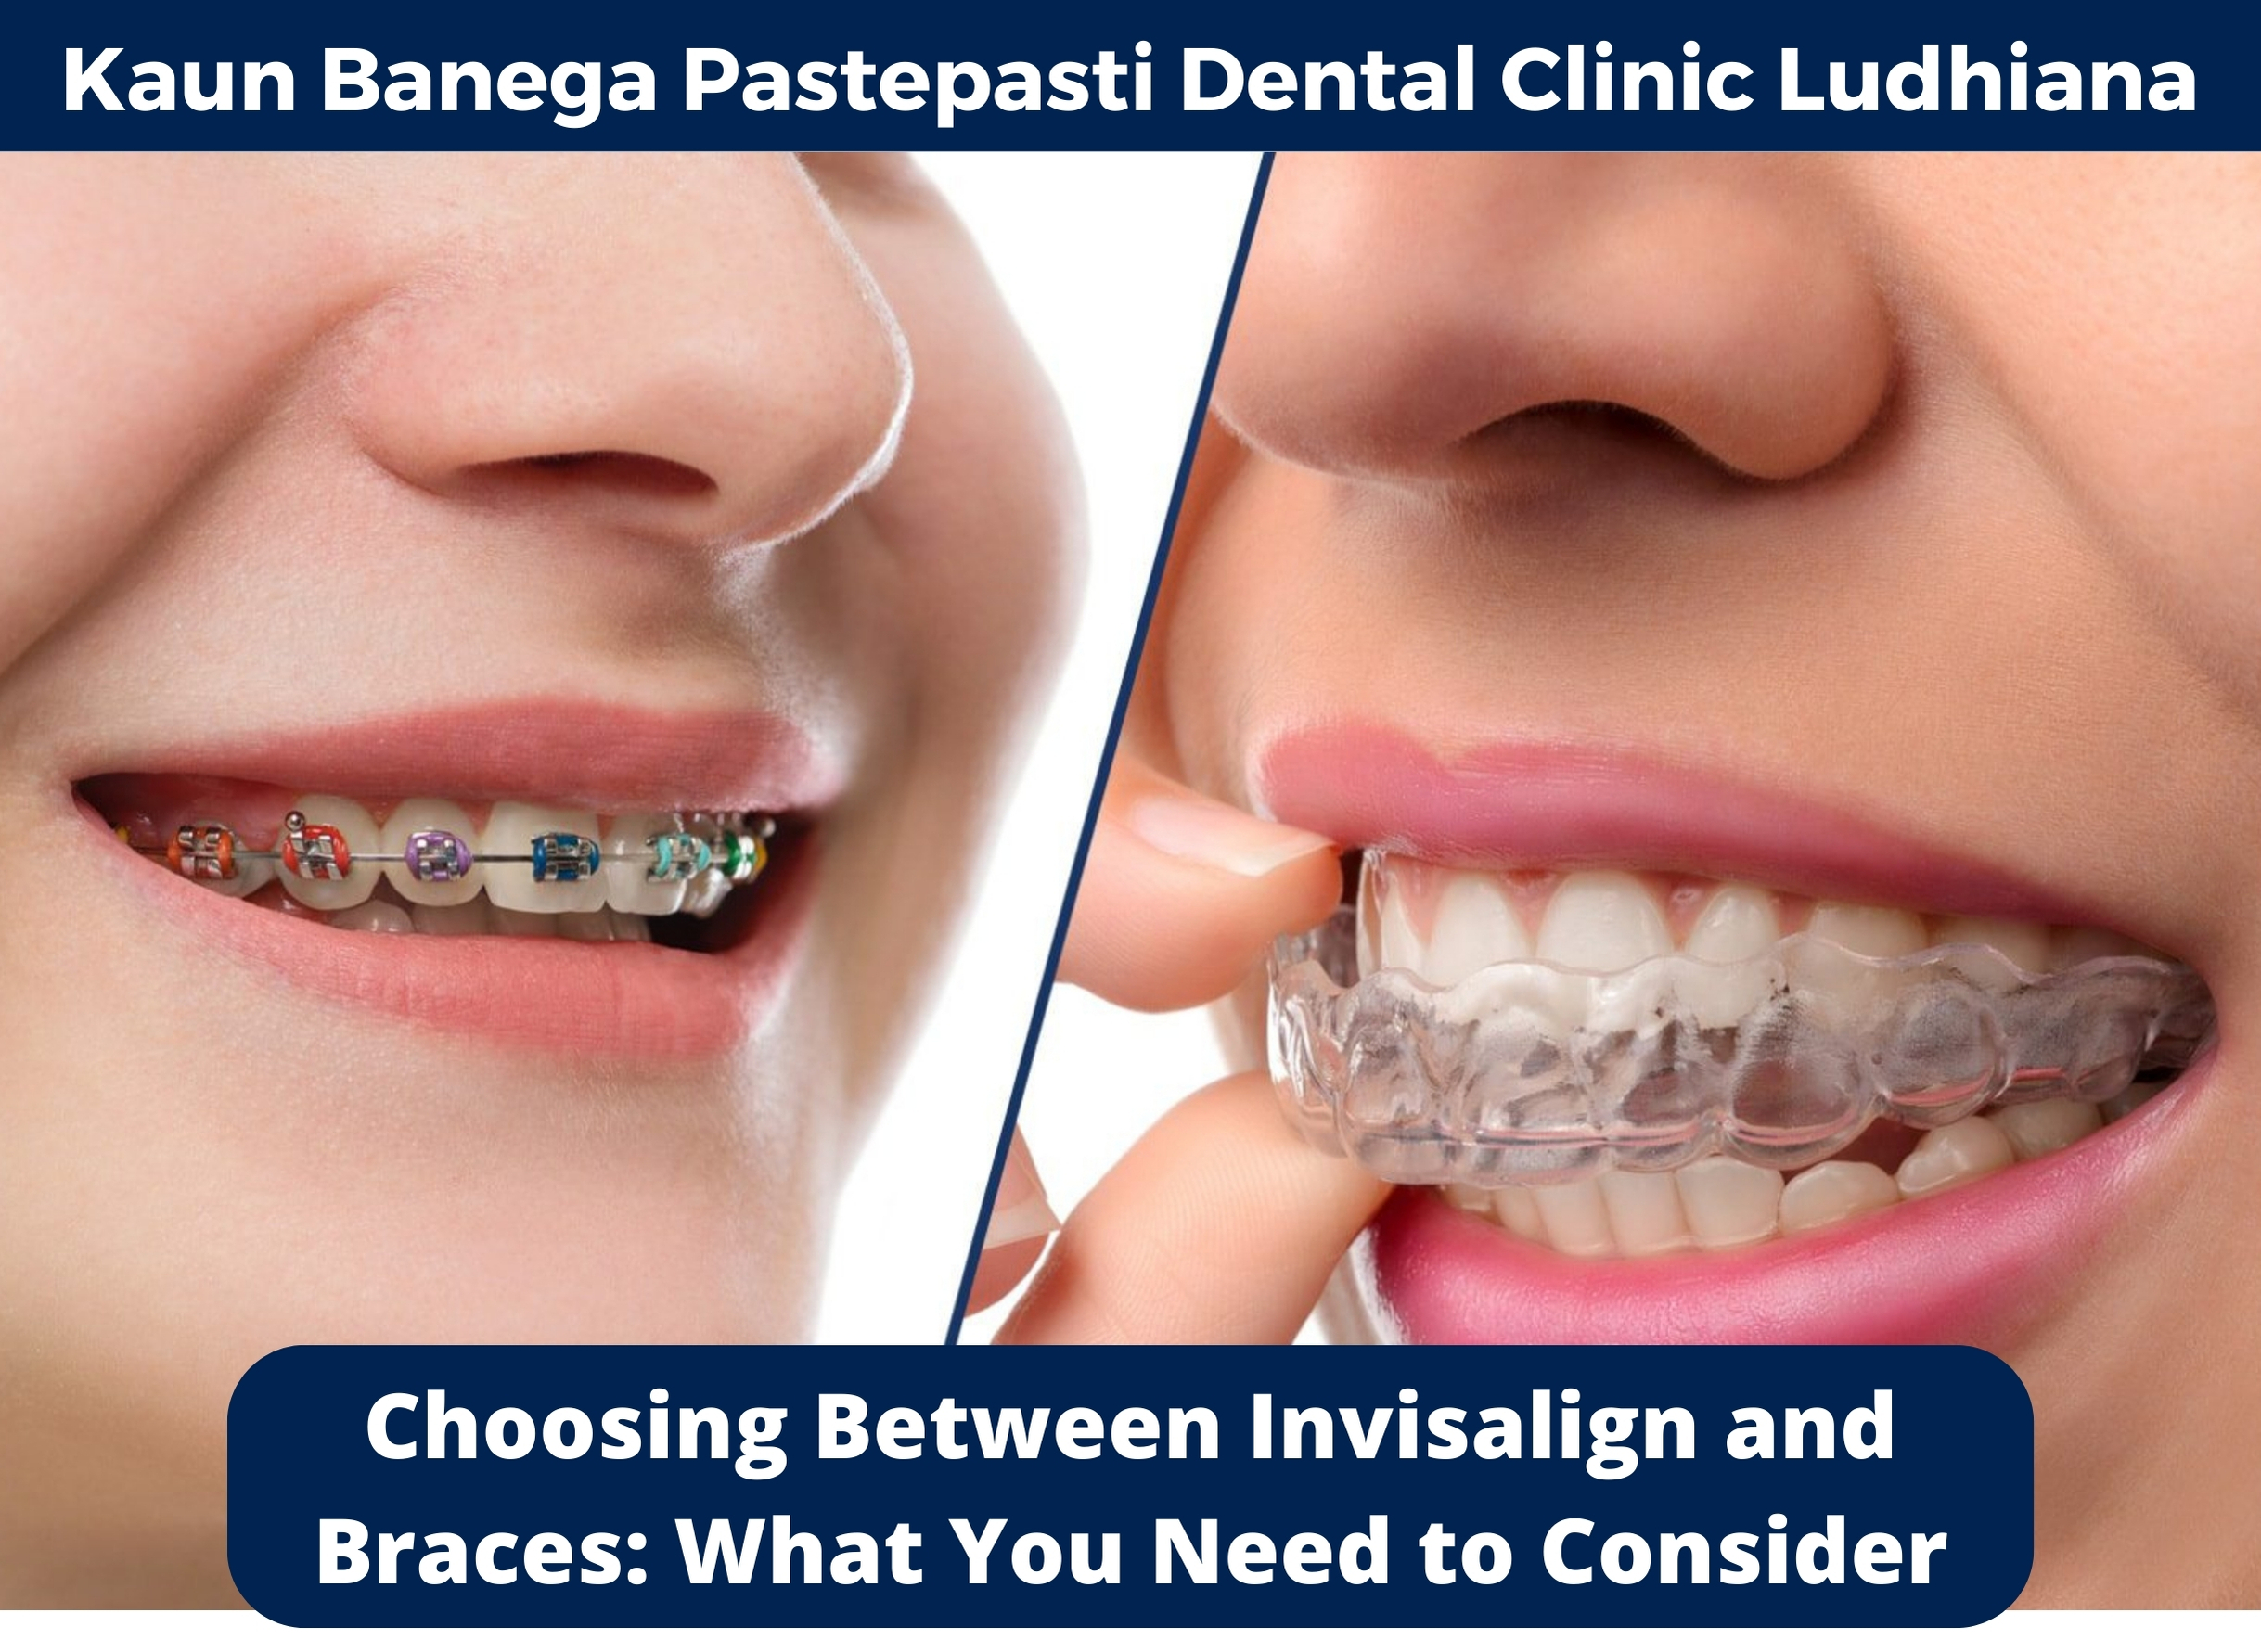 Dental Clinic in Ludhiana, Dental Clinic in jamalpur, Dentist in ludhiana, Dentist in jamalpur, dental care, general dentistry, Kaun Banega Pastepasti Dental Clinic in Ludhiana